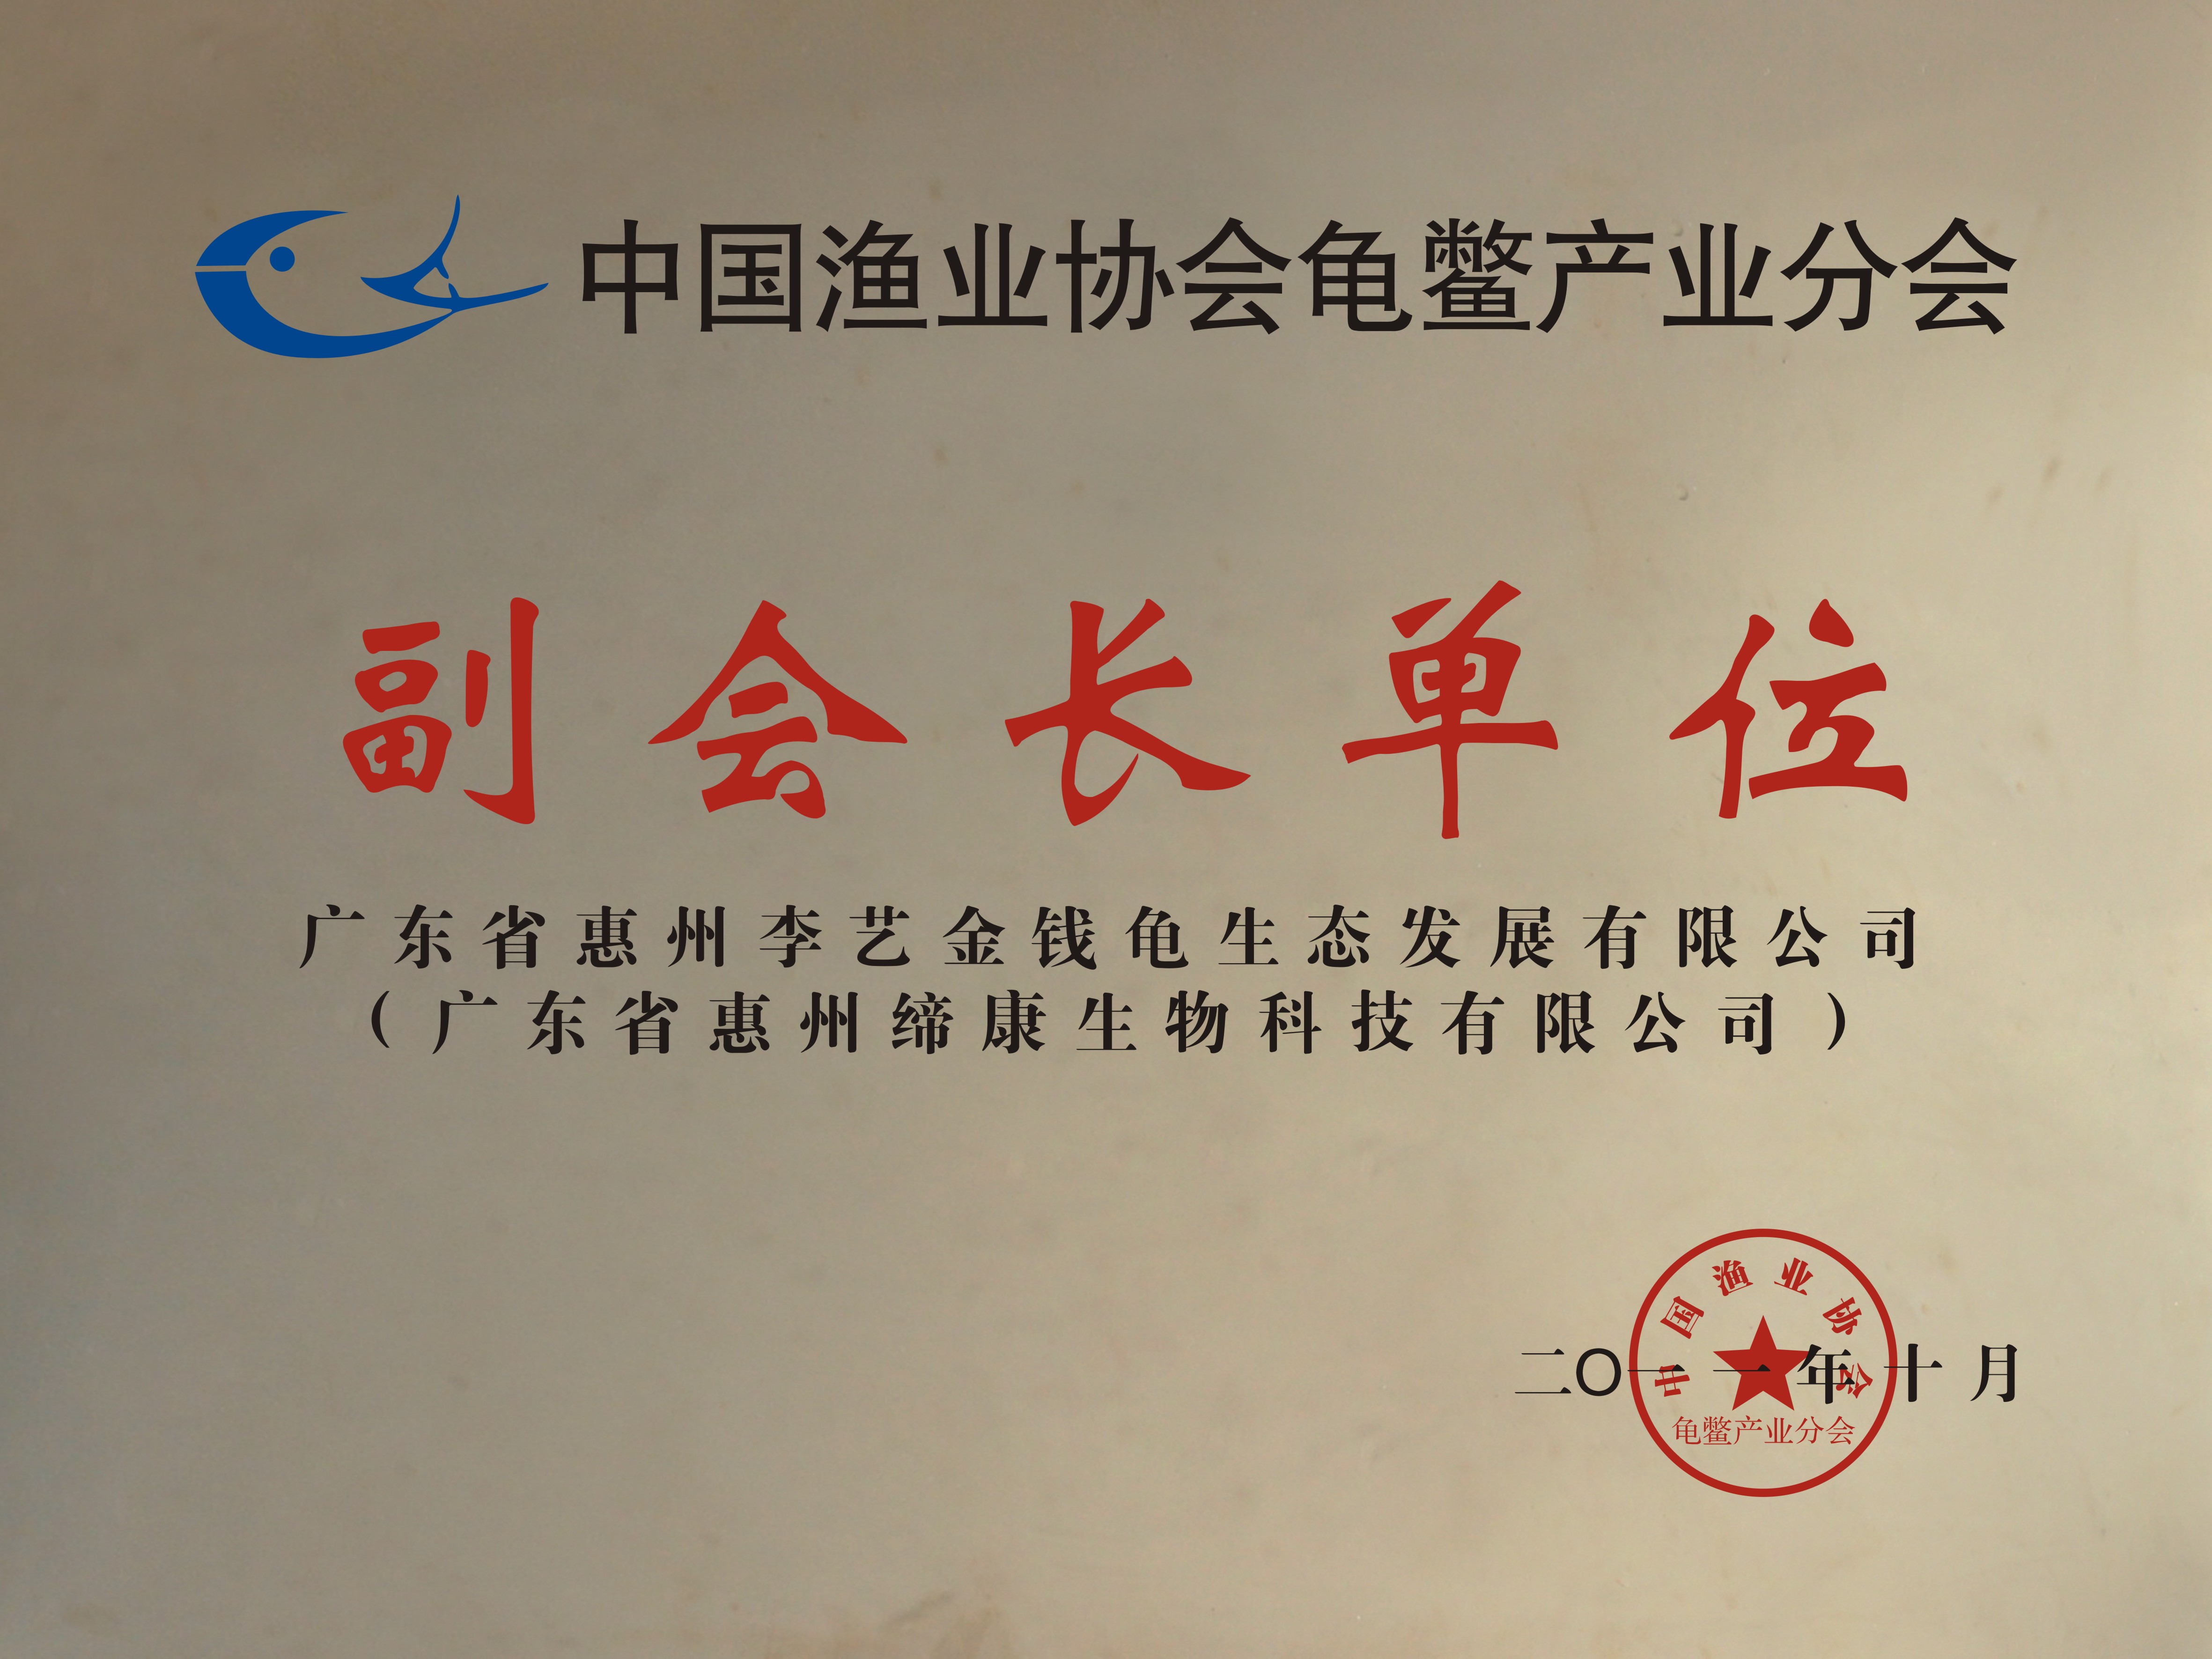 中国渔业协会龟鳖产业分会副会长单位